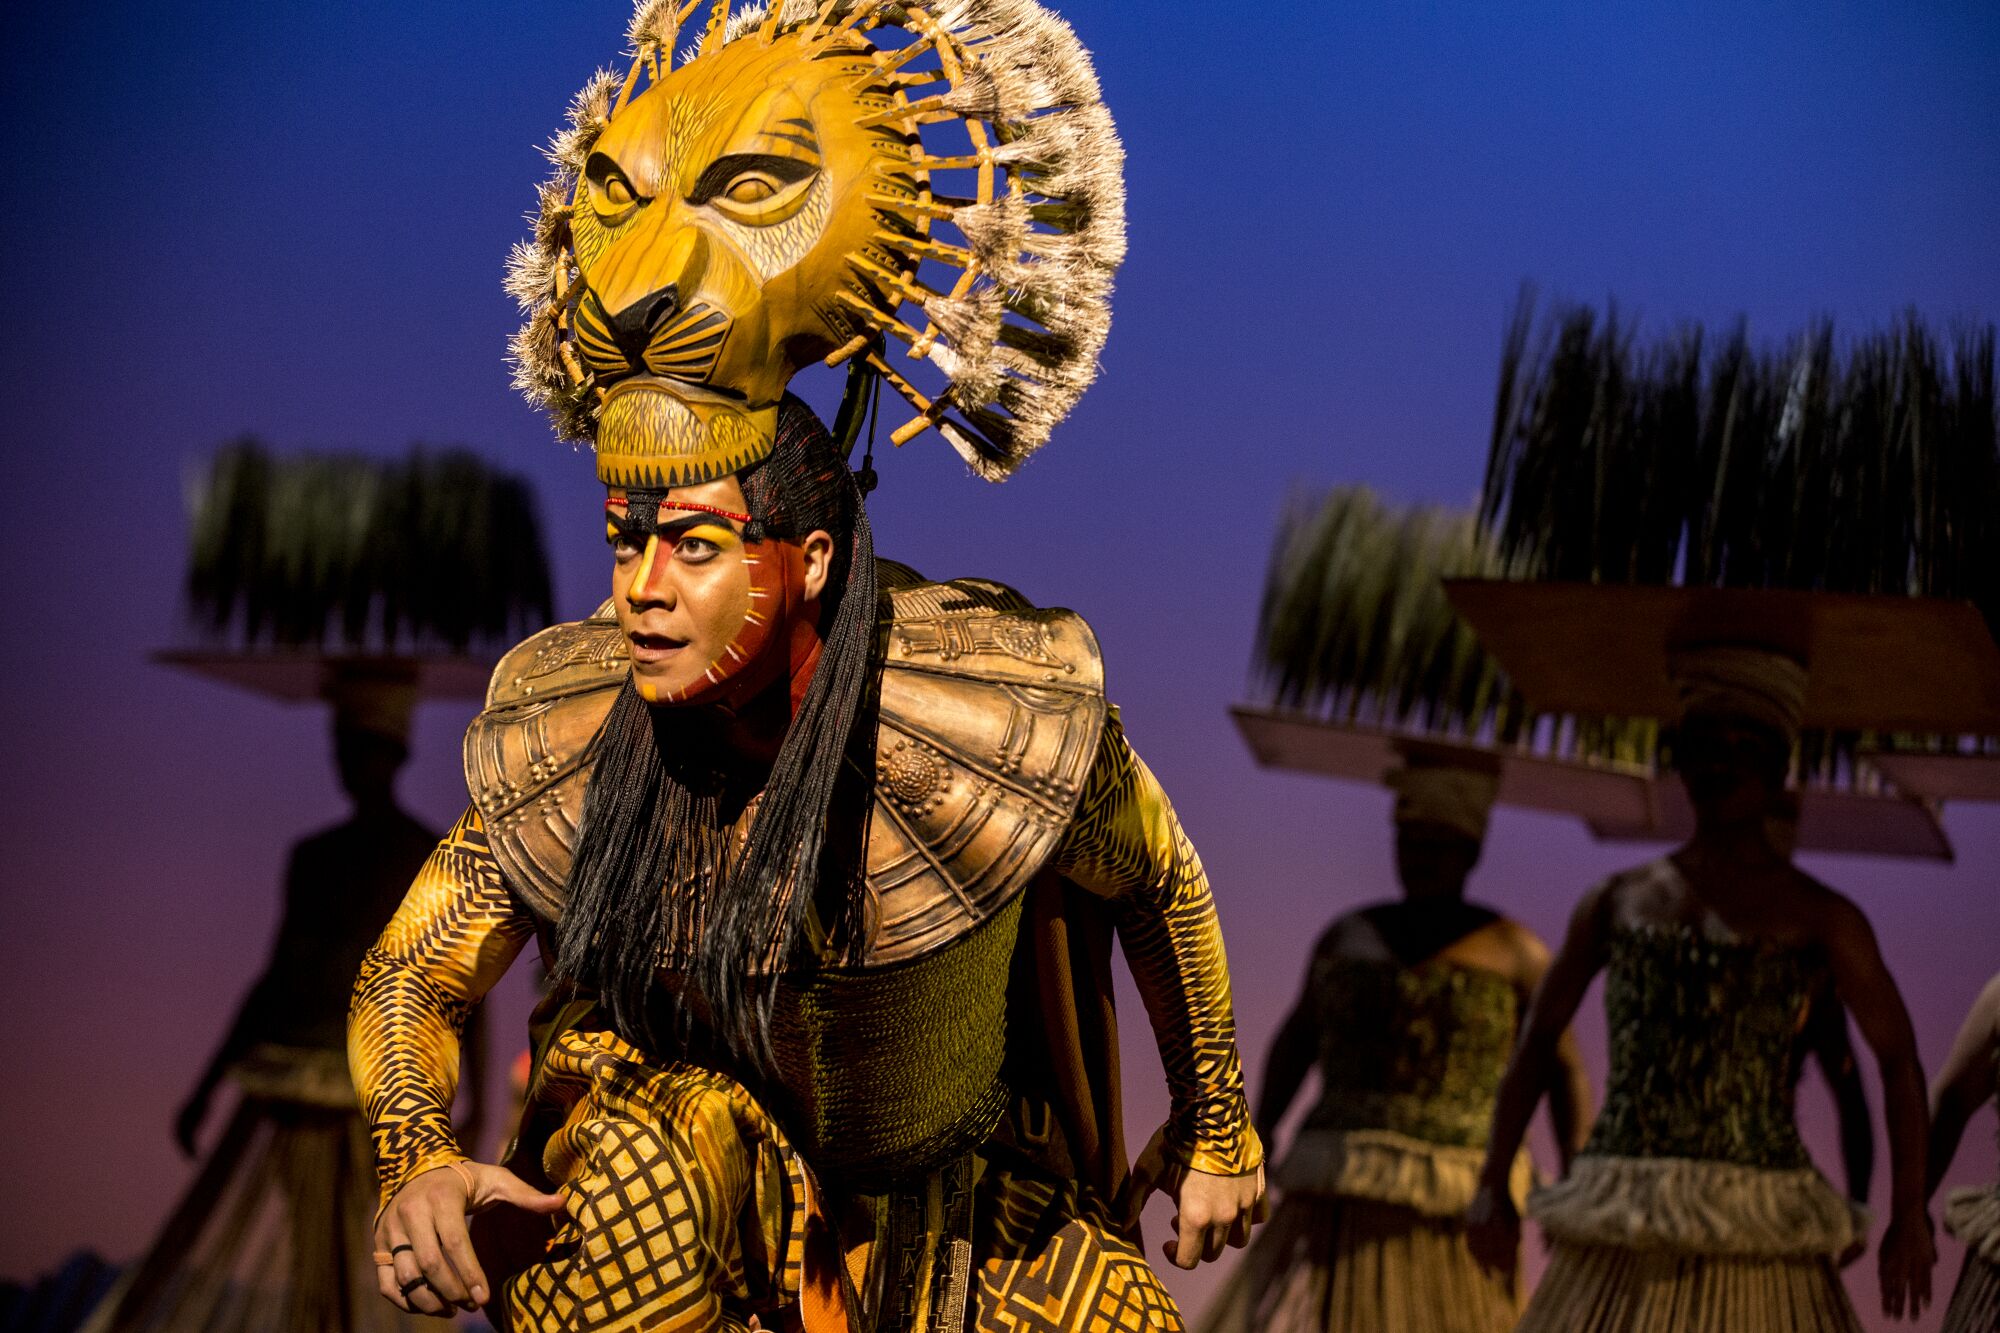 Una escena de la producción "El Rey León" que se presenta en el Pantages Theatre.